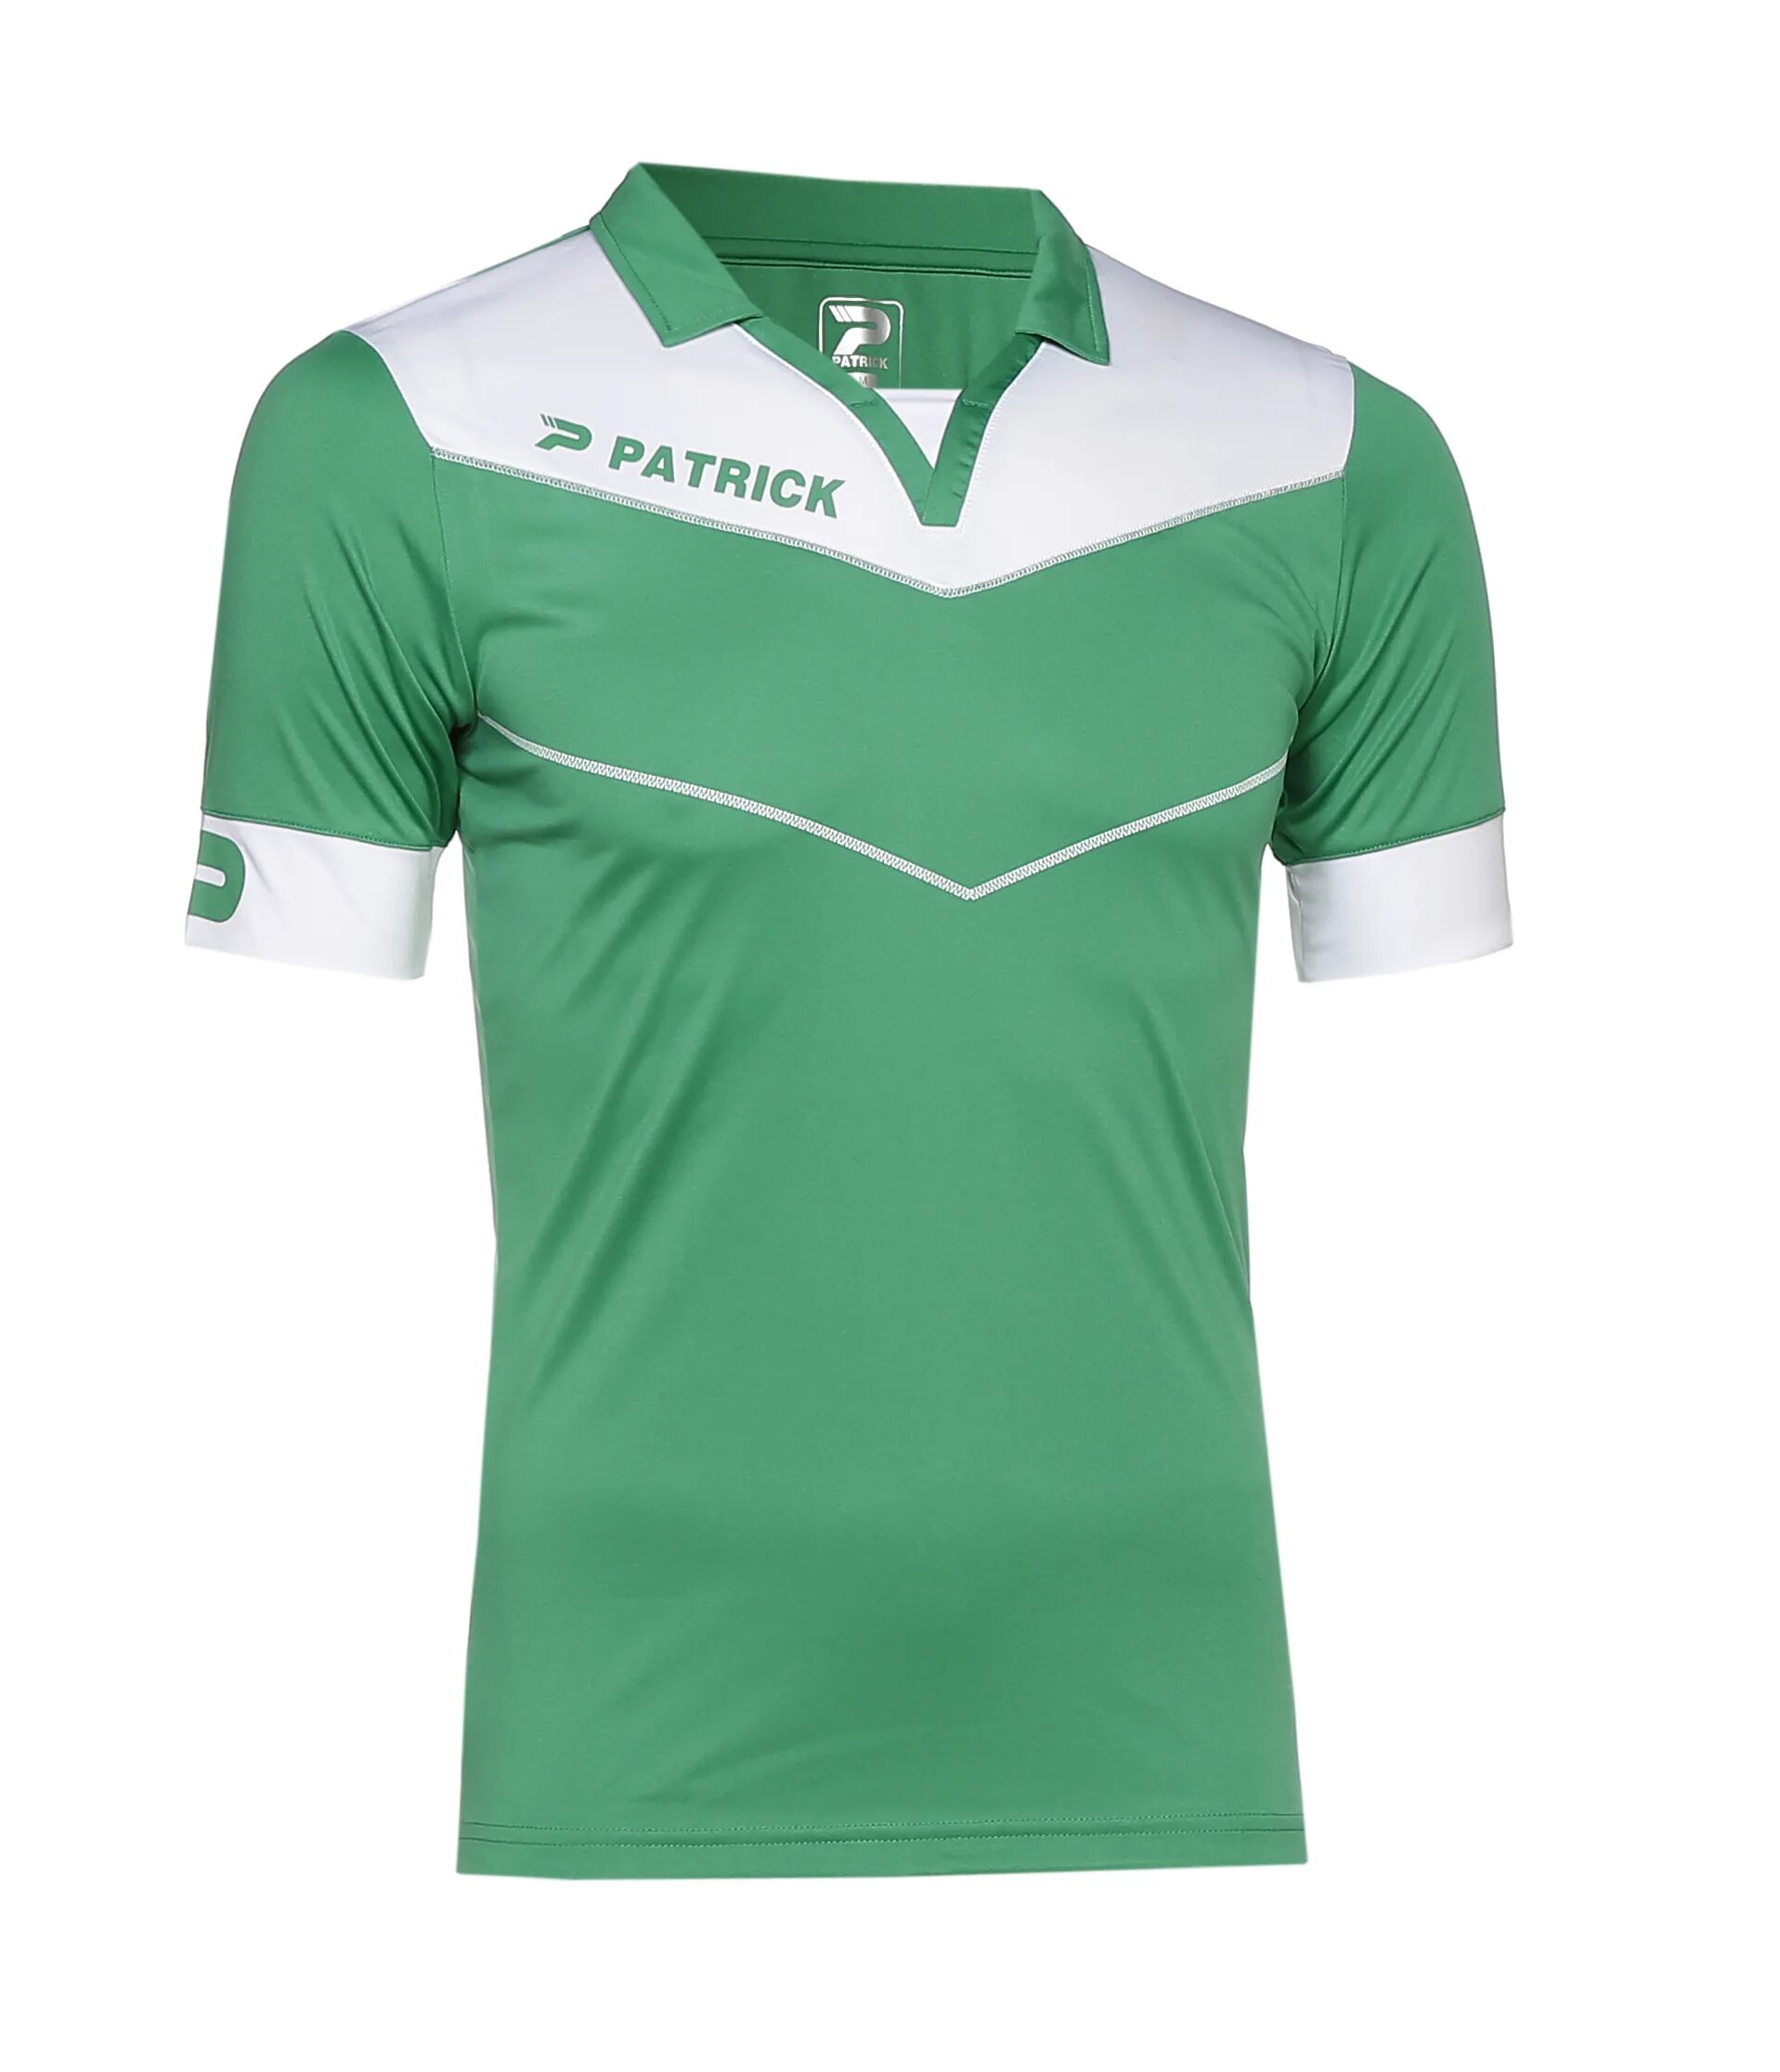 Повер форма. Футбольная форма бело зеленая. Patrick футболка игровая. Салатовая футбольная форма. Patrick форма.